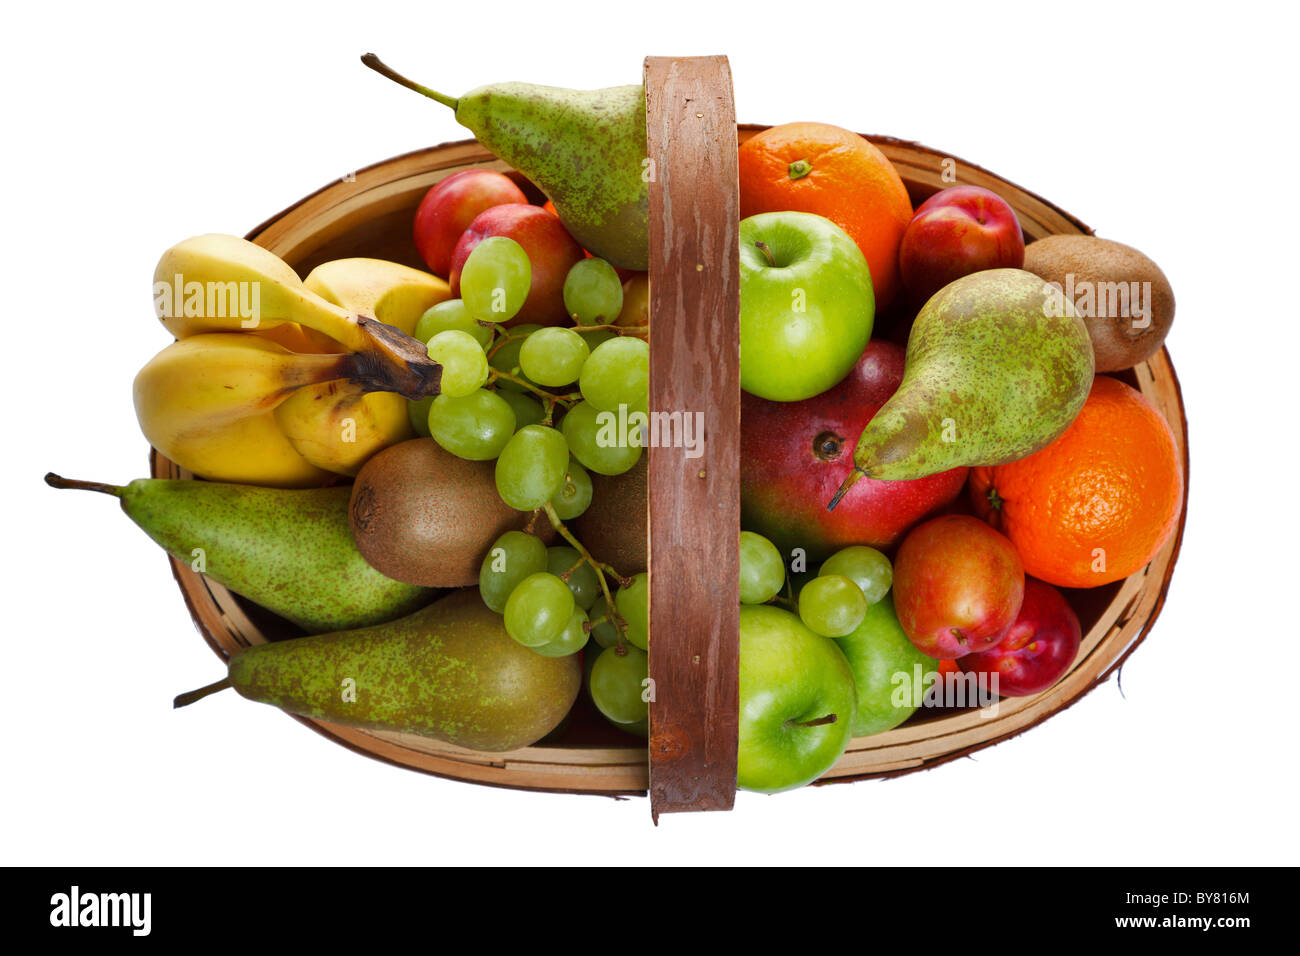 Foto von einem hölzernen Trug voll mit frischem Obst, von oben geschossen und isoliert auf einem weißen Hintergrund. Stockfoto